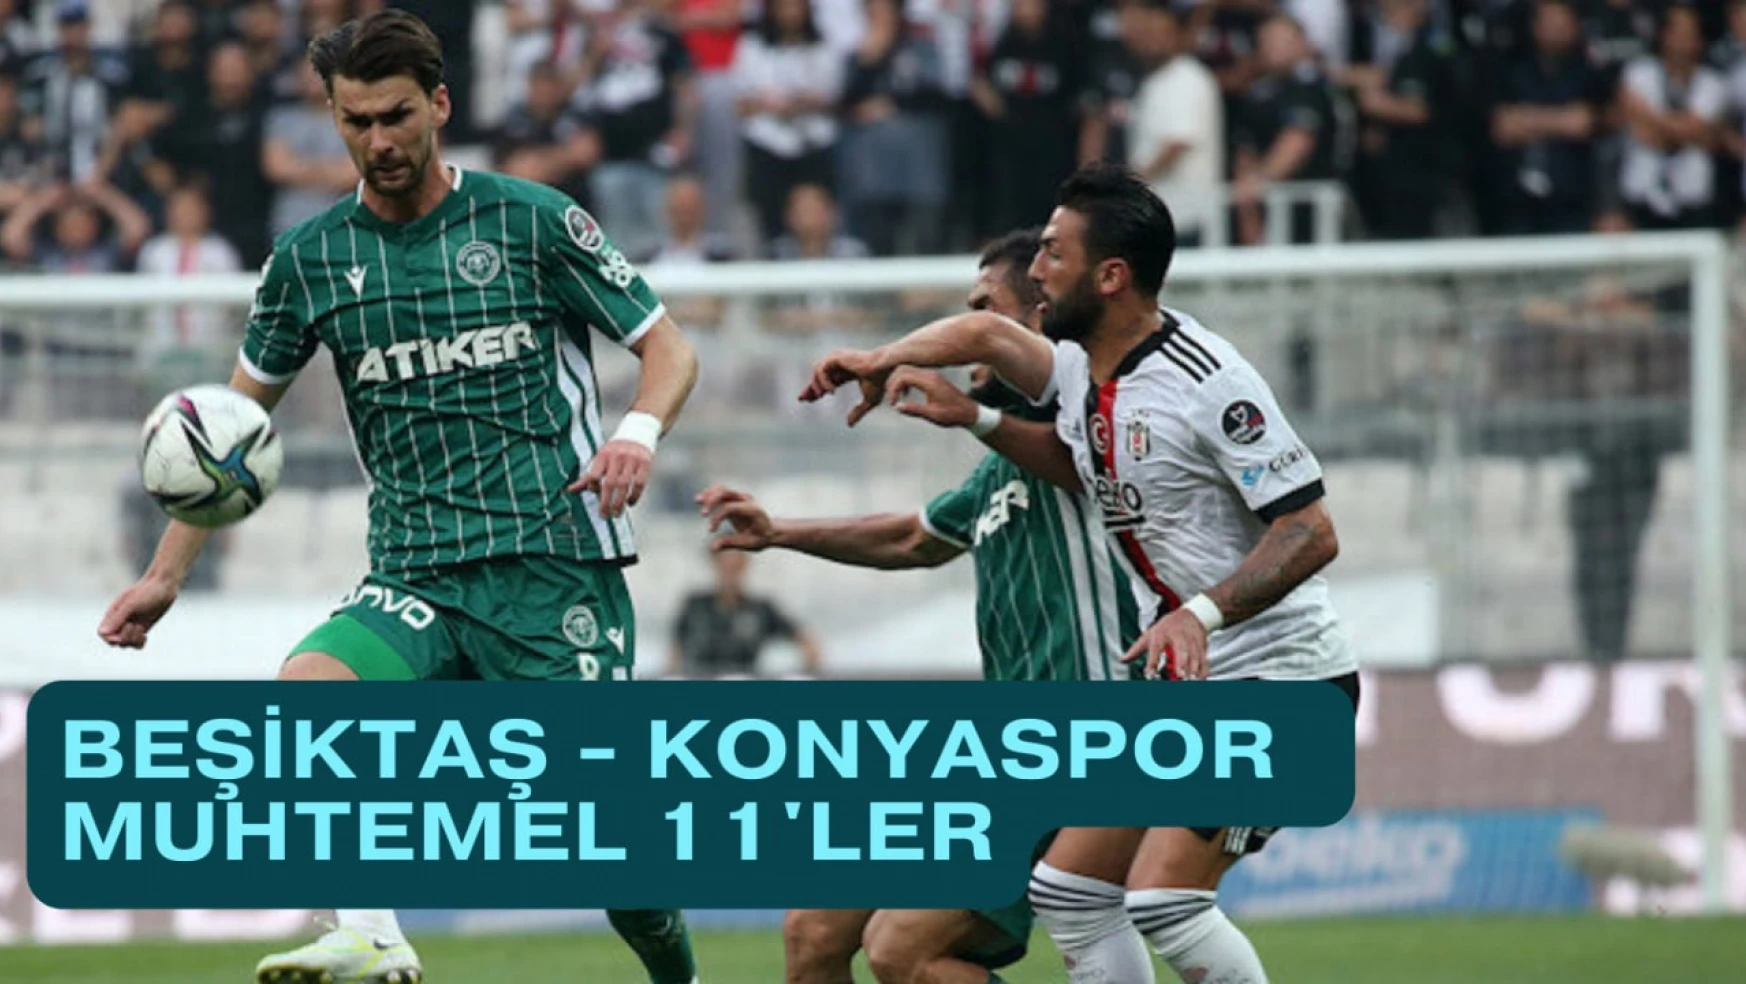 Beşiktaş - Konyaspor Muhtemel 11'ler